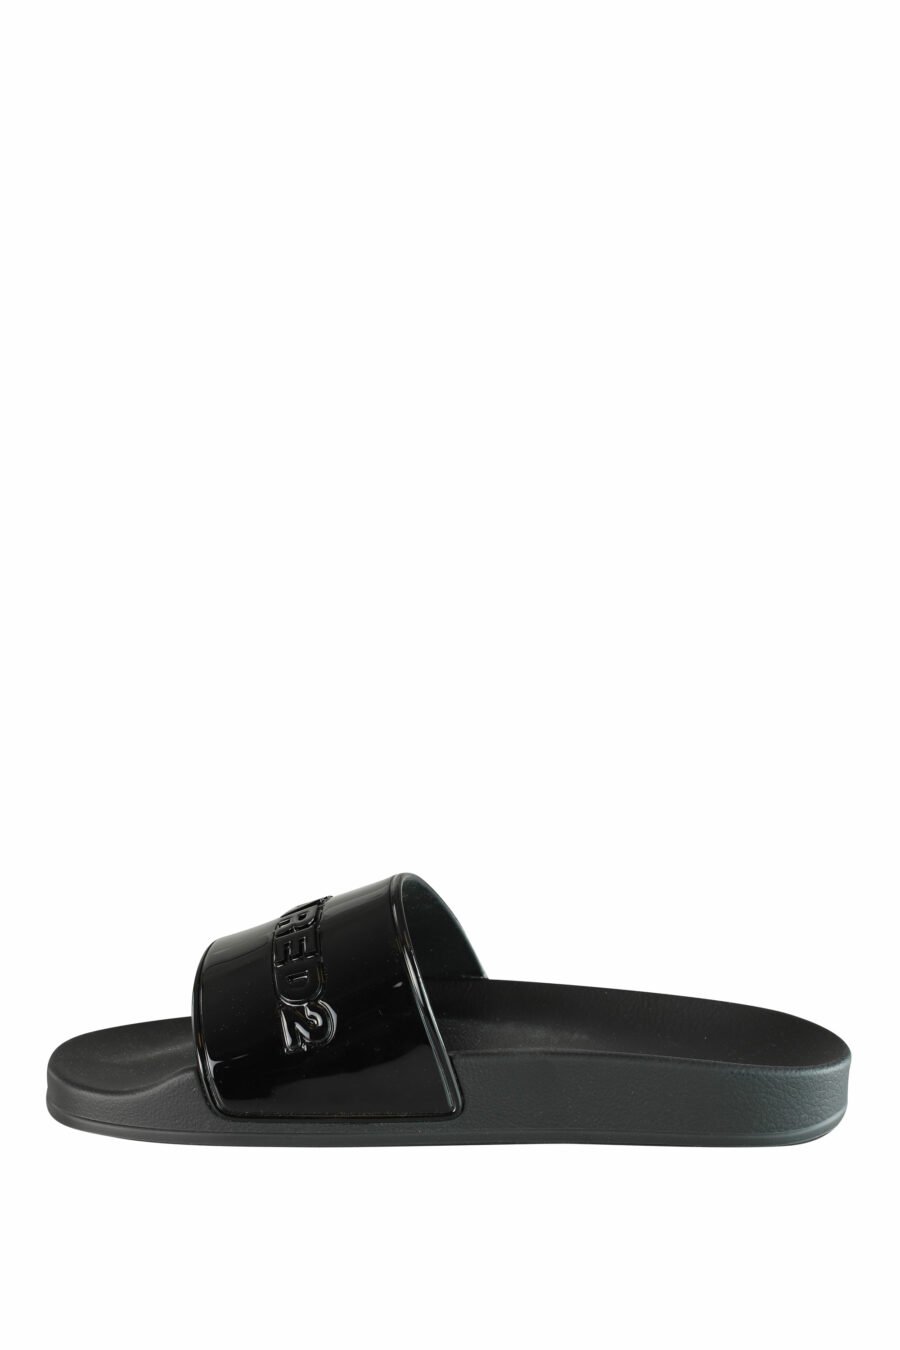 Glänzende schwarze Flip Flops mit schwarzem Maxilogo - IMG 1337